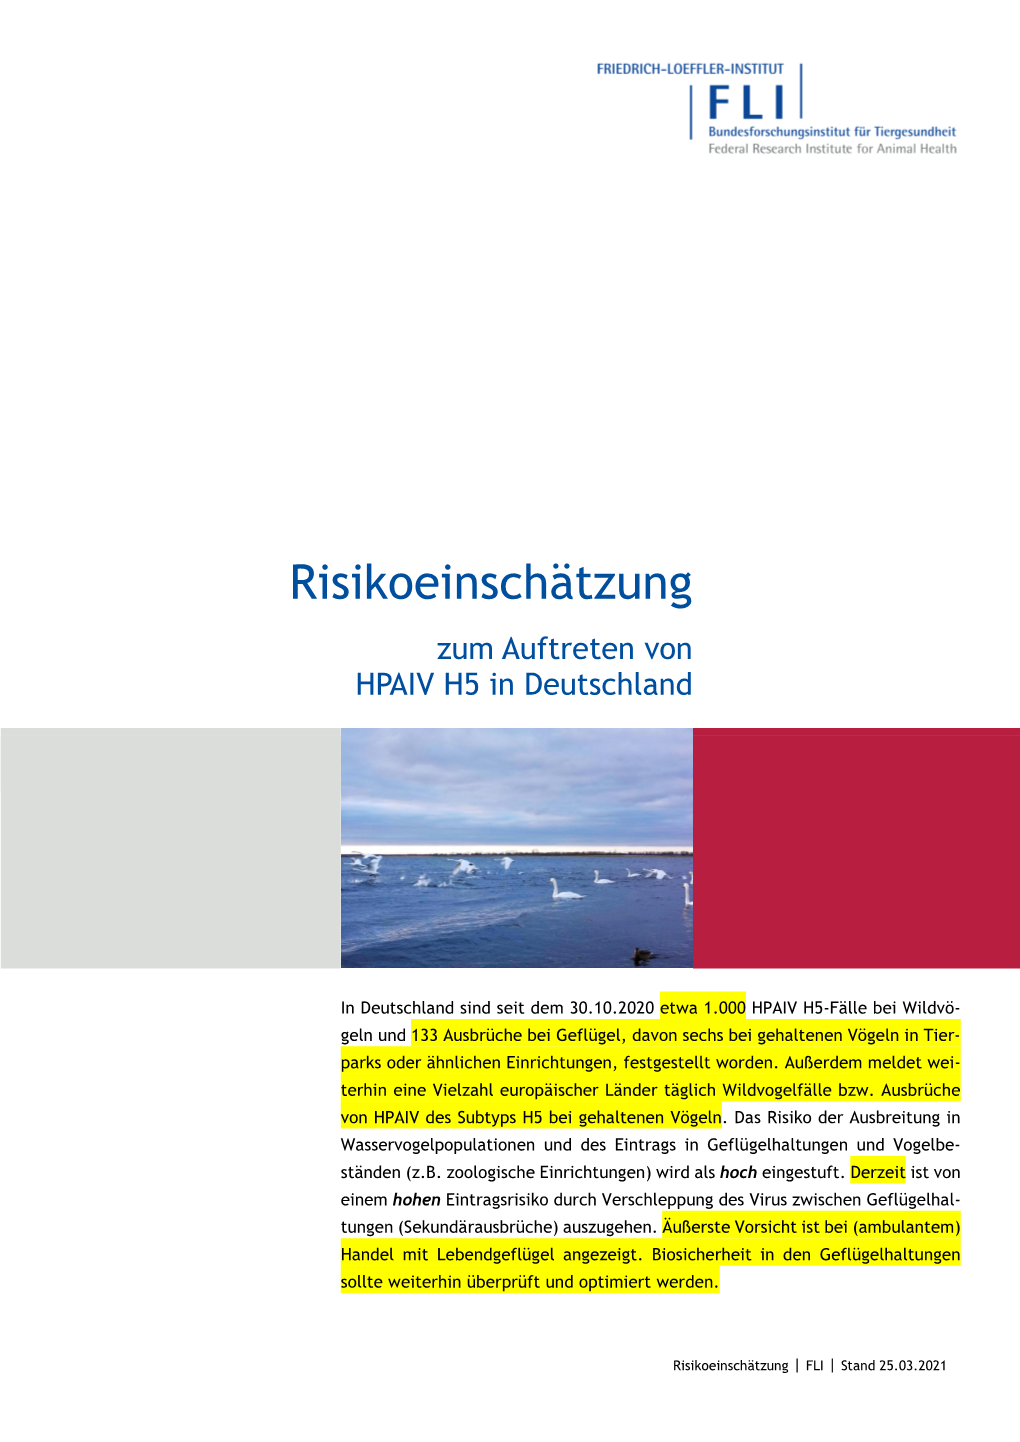 Risikoeinschätzung Zum Auftreten Von HPAIV H5 in Deutschland, Stand 25.03.2021